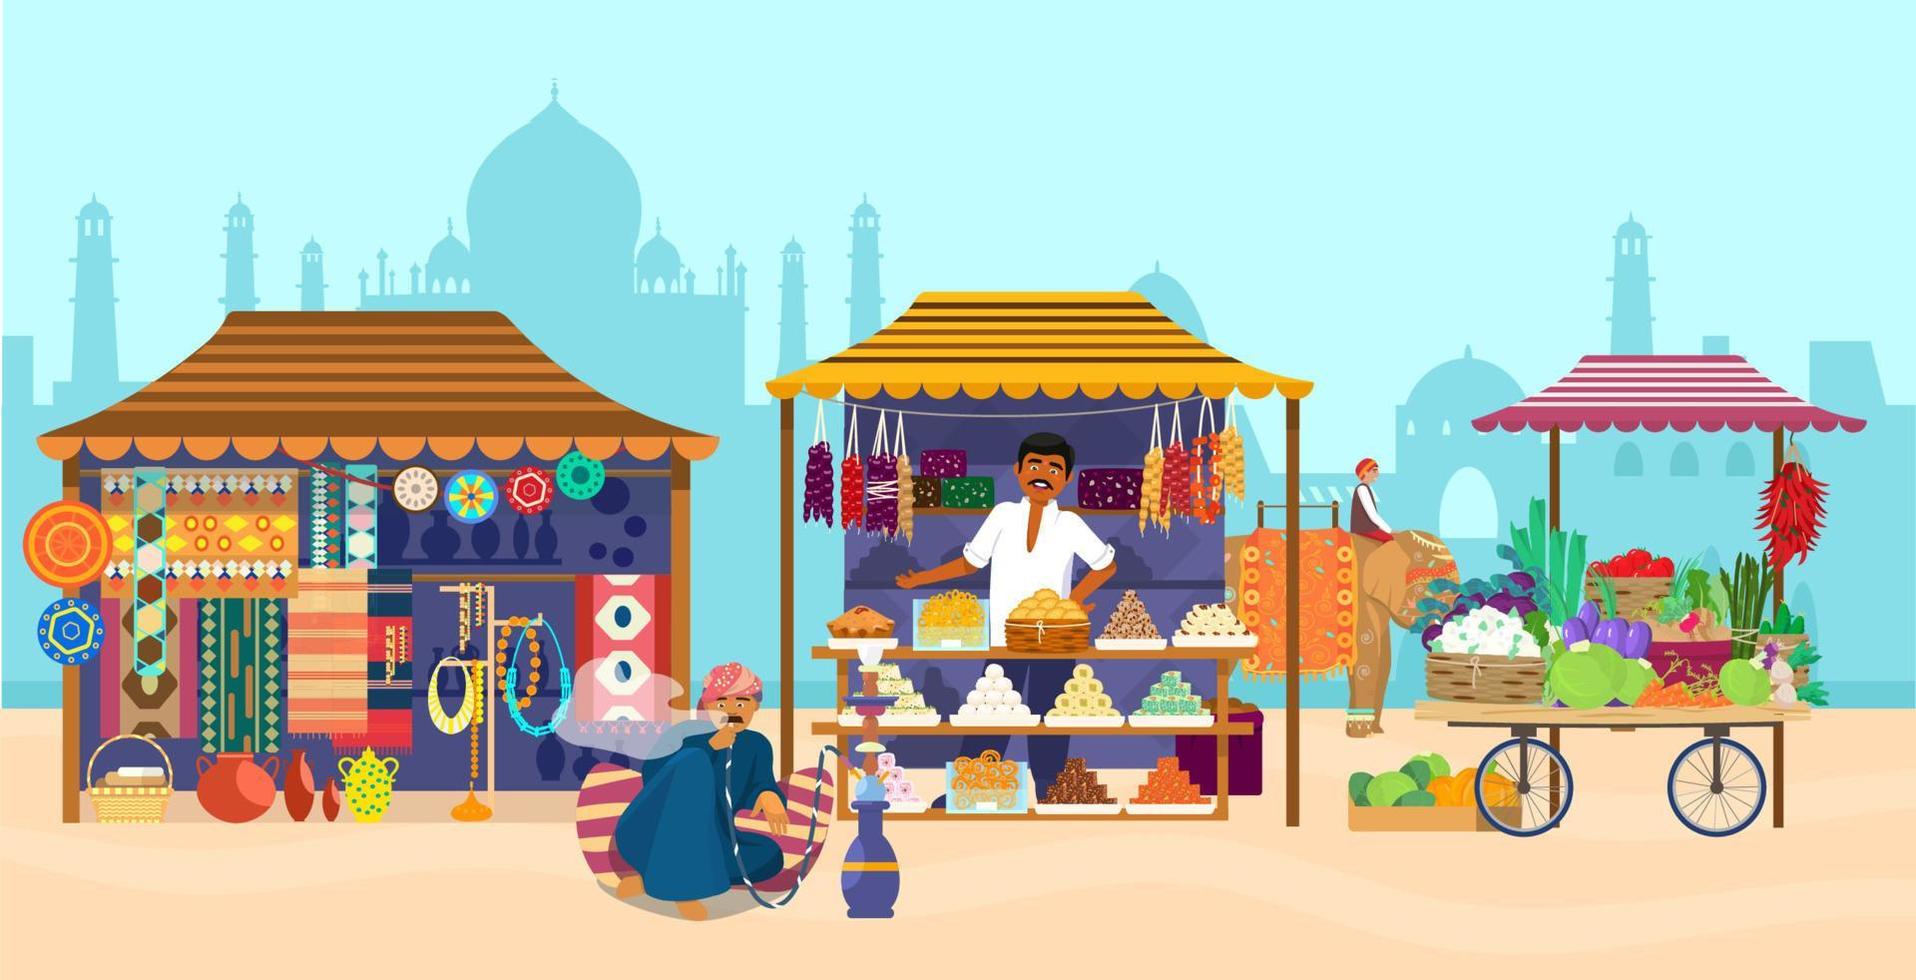 vectorillustratie van Aziatische markt met verschillende winkels en mensen. olifantenrijder, taj mahal silhouet, souvenirwinkel, snoepwinkel, aardewerk, tapijten, stoffen, groenten, man rokende waterpijp. vector